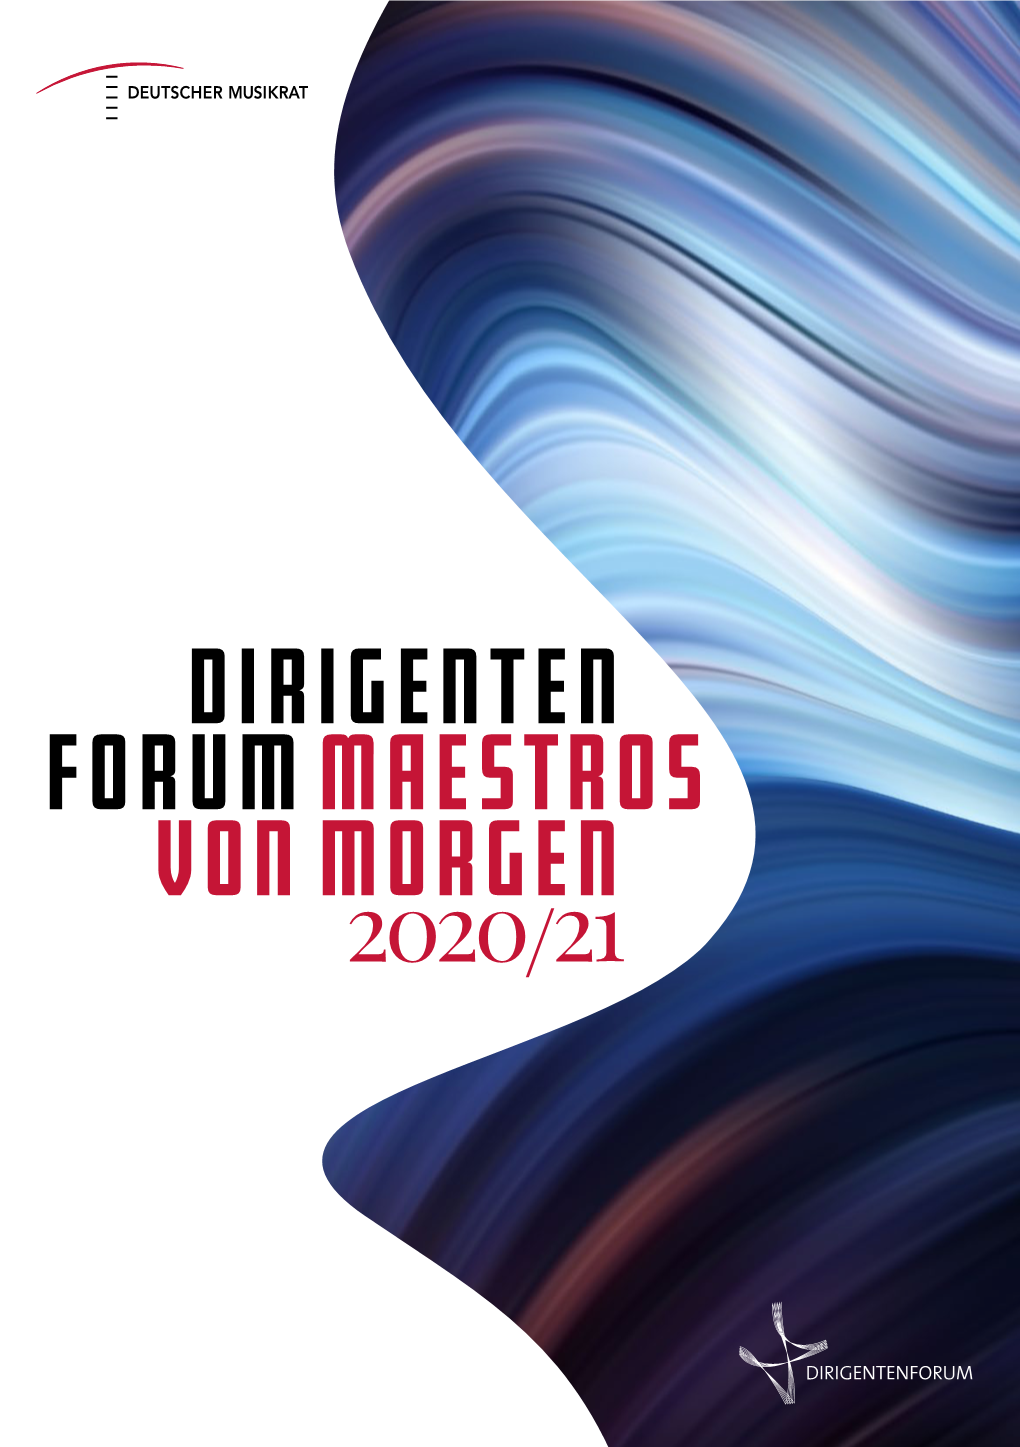 Dirigenten Forum MAESTROS Morgen 2020/21